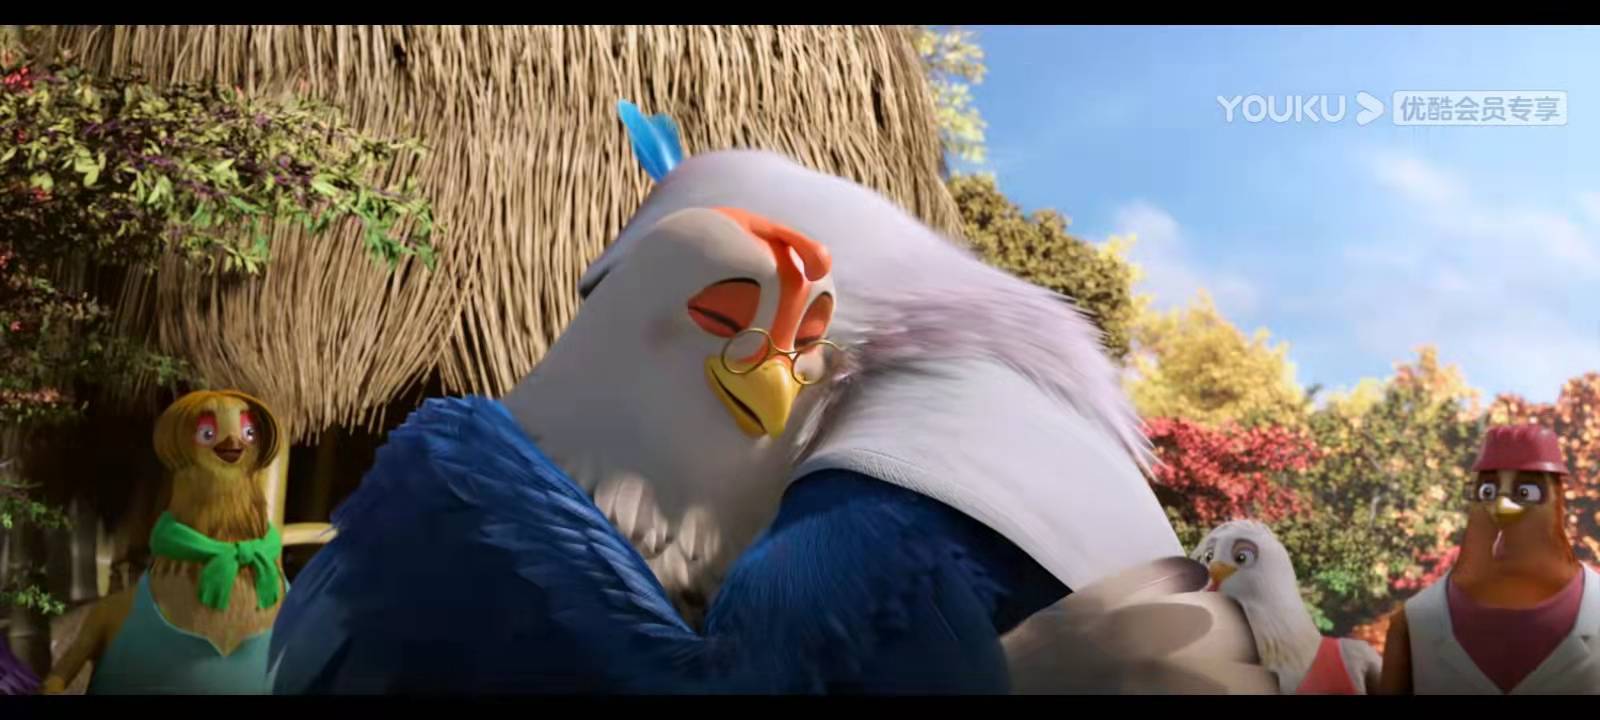 想飞，就飞吧！——影片《老鹰抓小鸡》